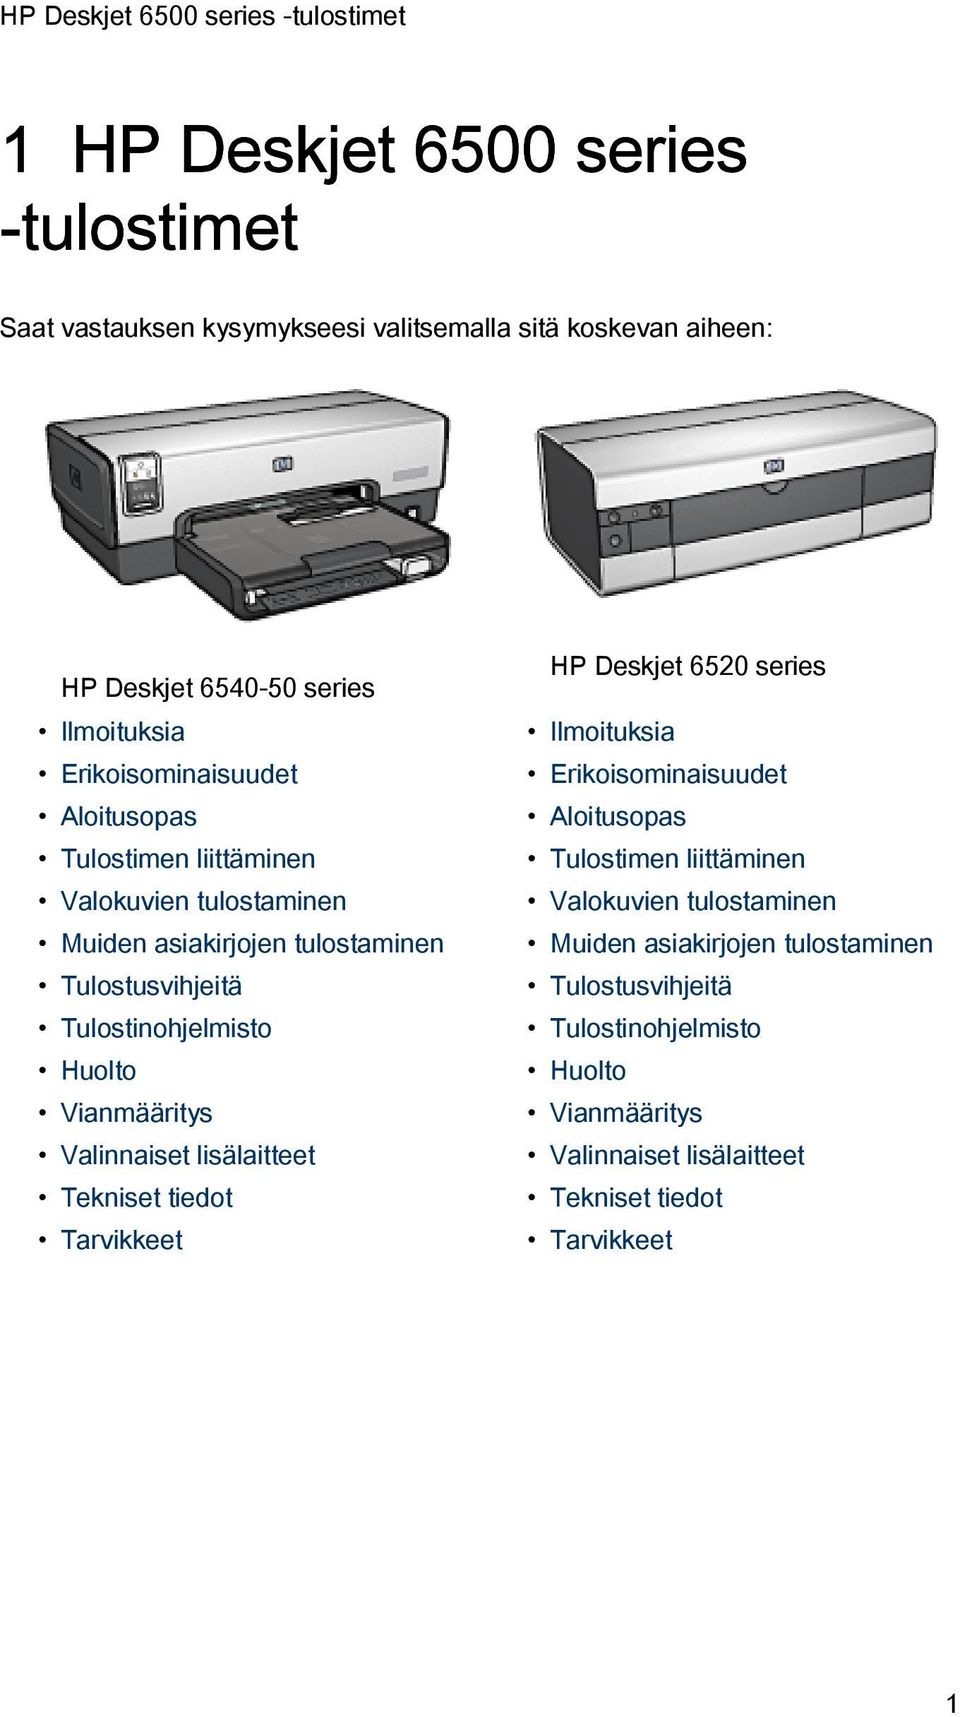 Huolto Vianmääritys Valinnaiset lisälaitteet Tekniset tiedot Tarvikkeet HP Deskjet 6520 series Ilmoituksia  Huolto Vianmääritys Valinnaiset lisälaitteet